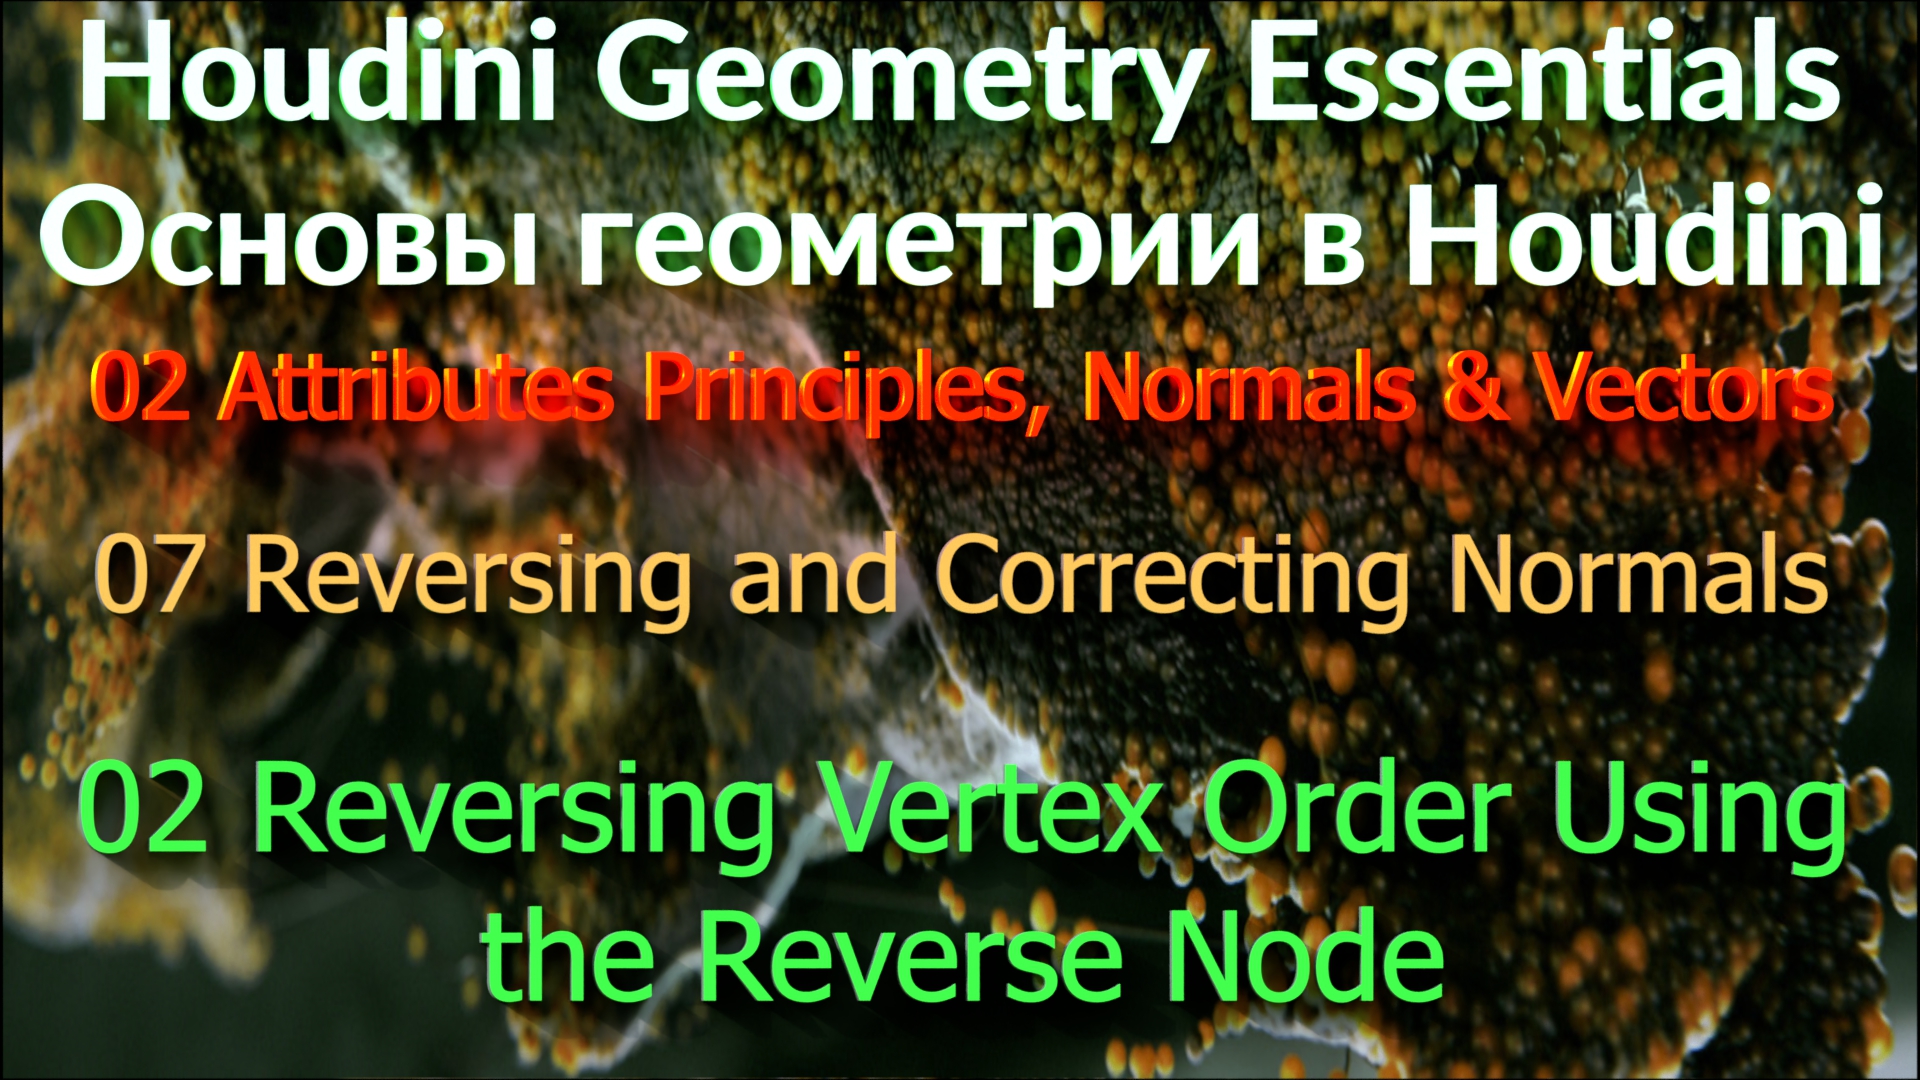 02_07_02 Reversing Vertex Order Using the Reverse Node